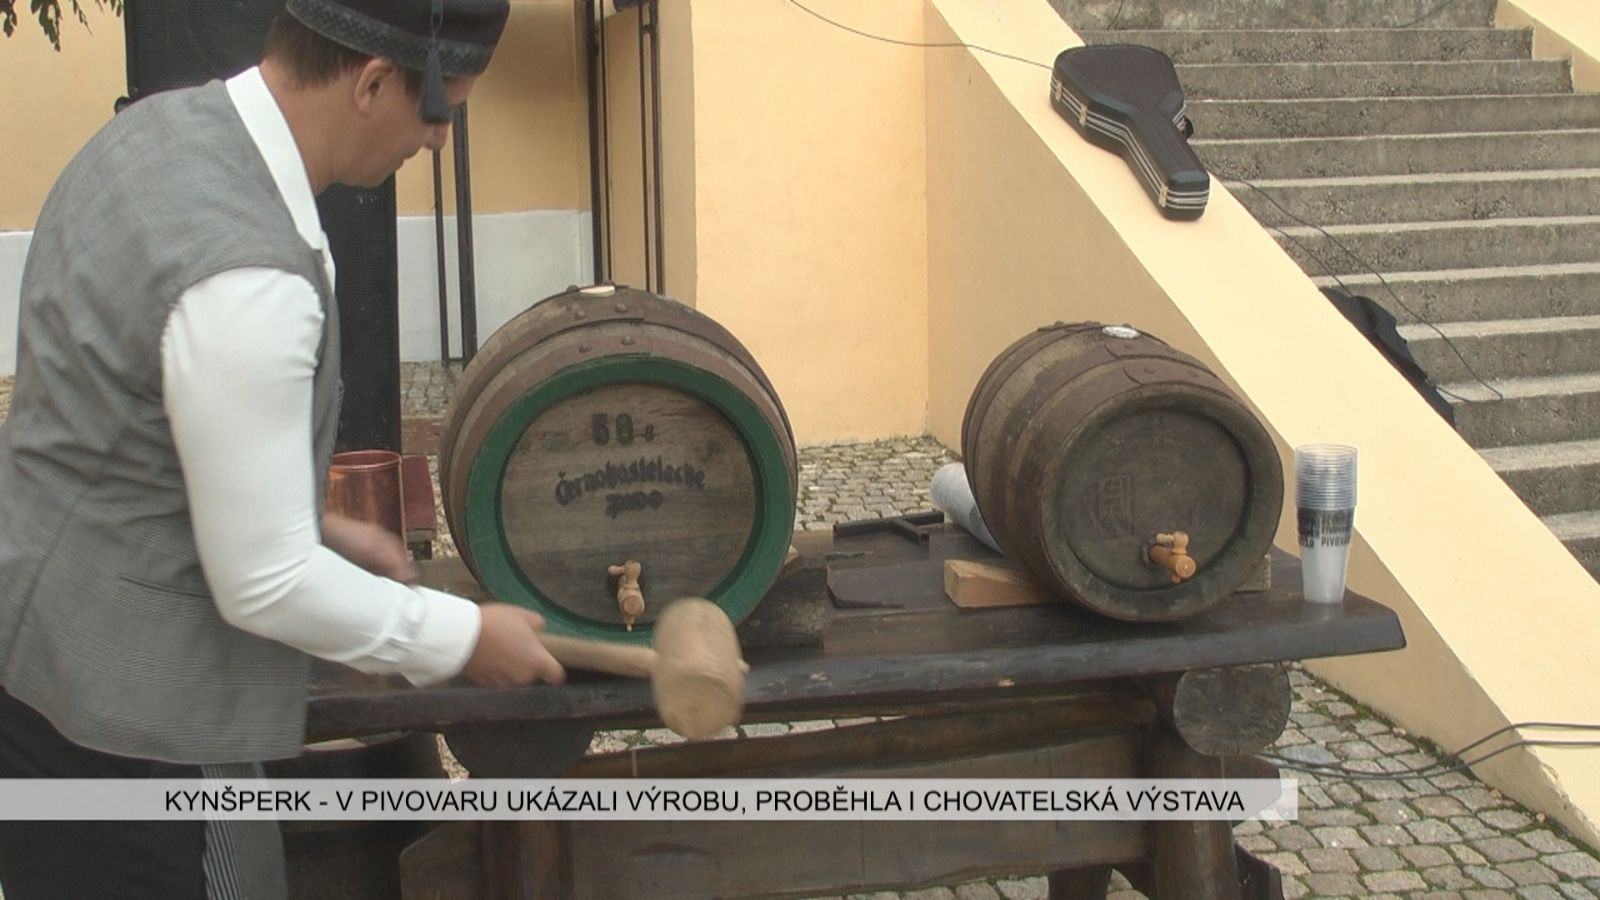 Kynšperk: V pivovaru ukázali výrobu, proběhla i chovatelská výstava (TV Západ)